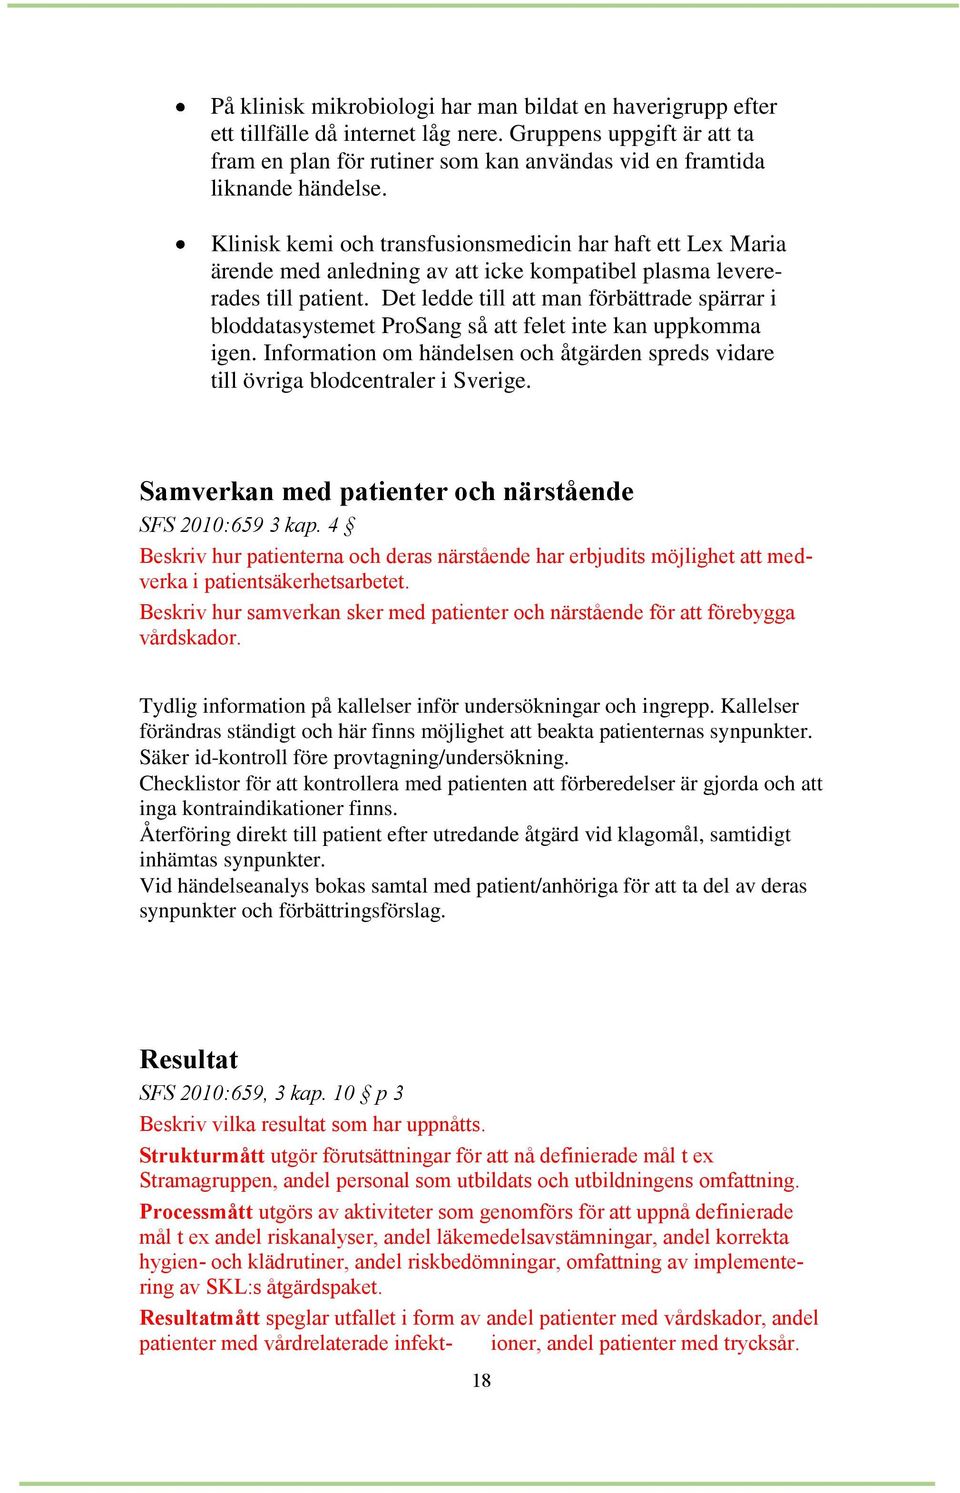 Det ledde till att man förbättrade spärrar i bloddatasystemet ProSang så att felet inte kan uppkomma igen. Information om händelsen och åtgärden spreds vidare till övriga blodcentraler i Sverige.